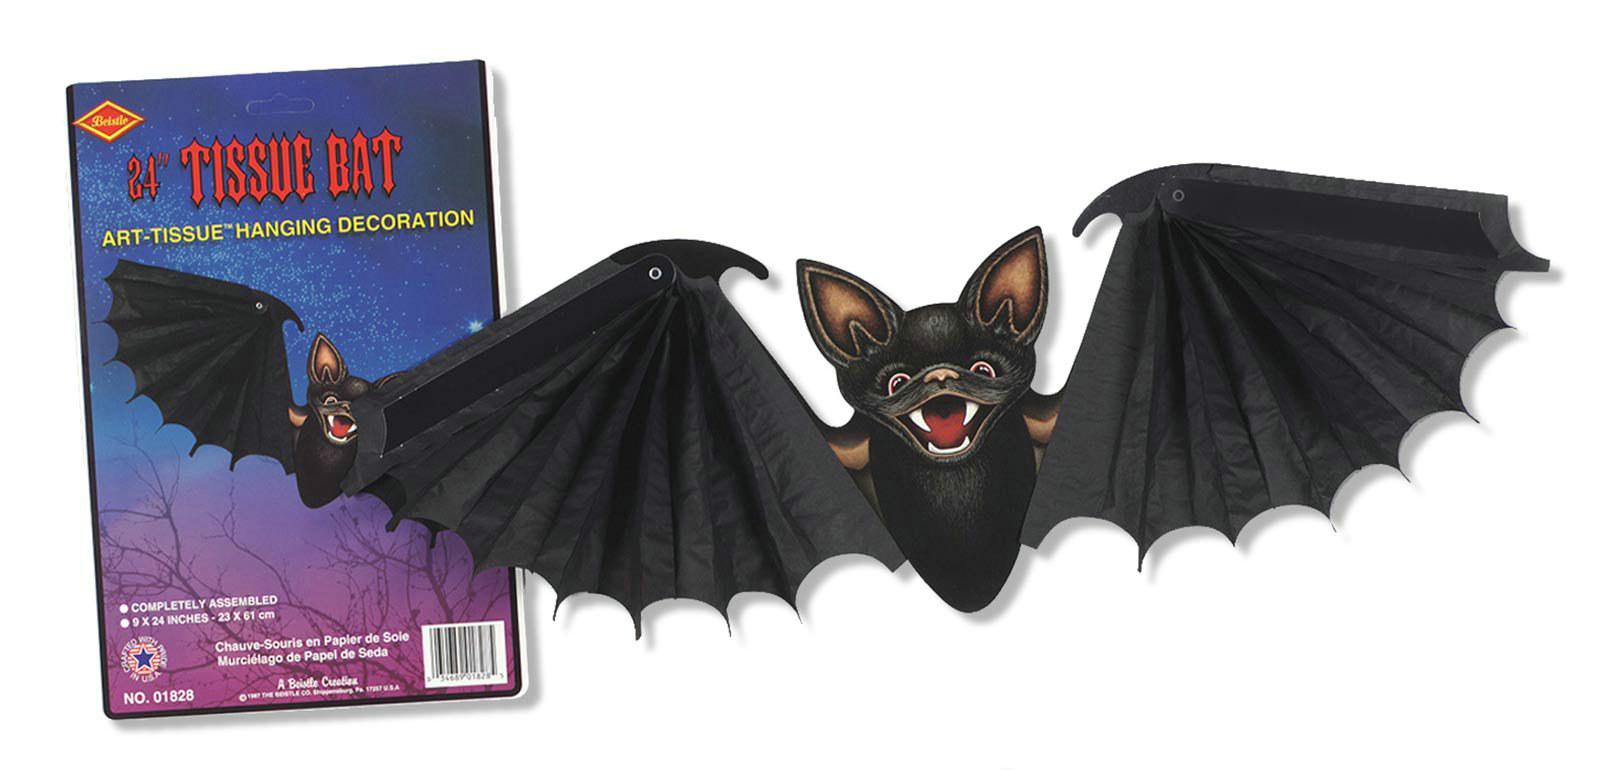 23" Tissue Bat